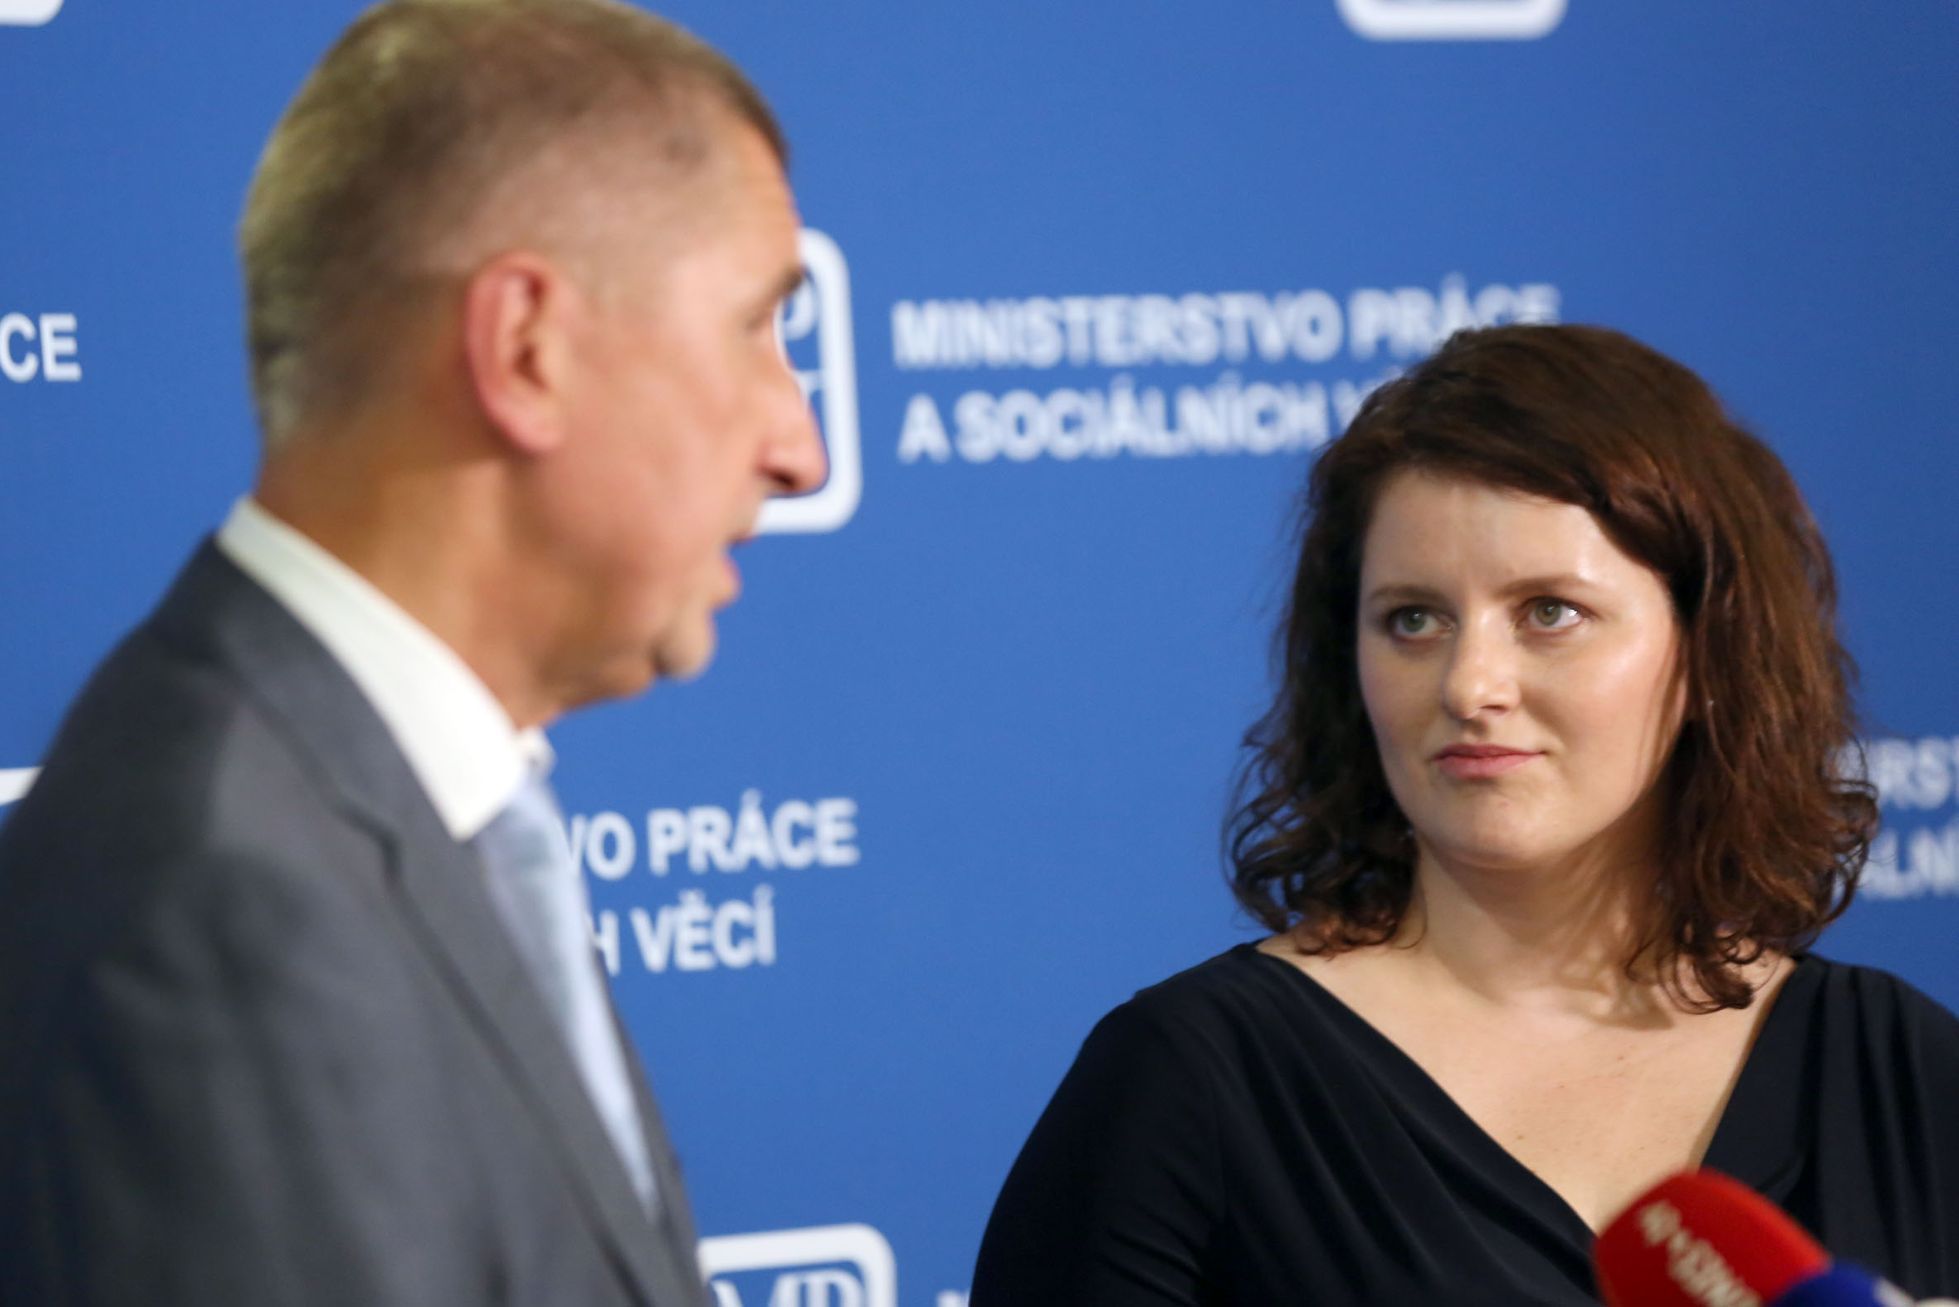 Premiér Andrej Babiš uvedl do úřadu ministryni práce a sociálních věcí Janu Maláčovou